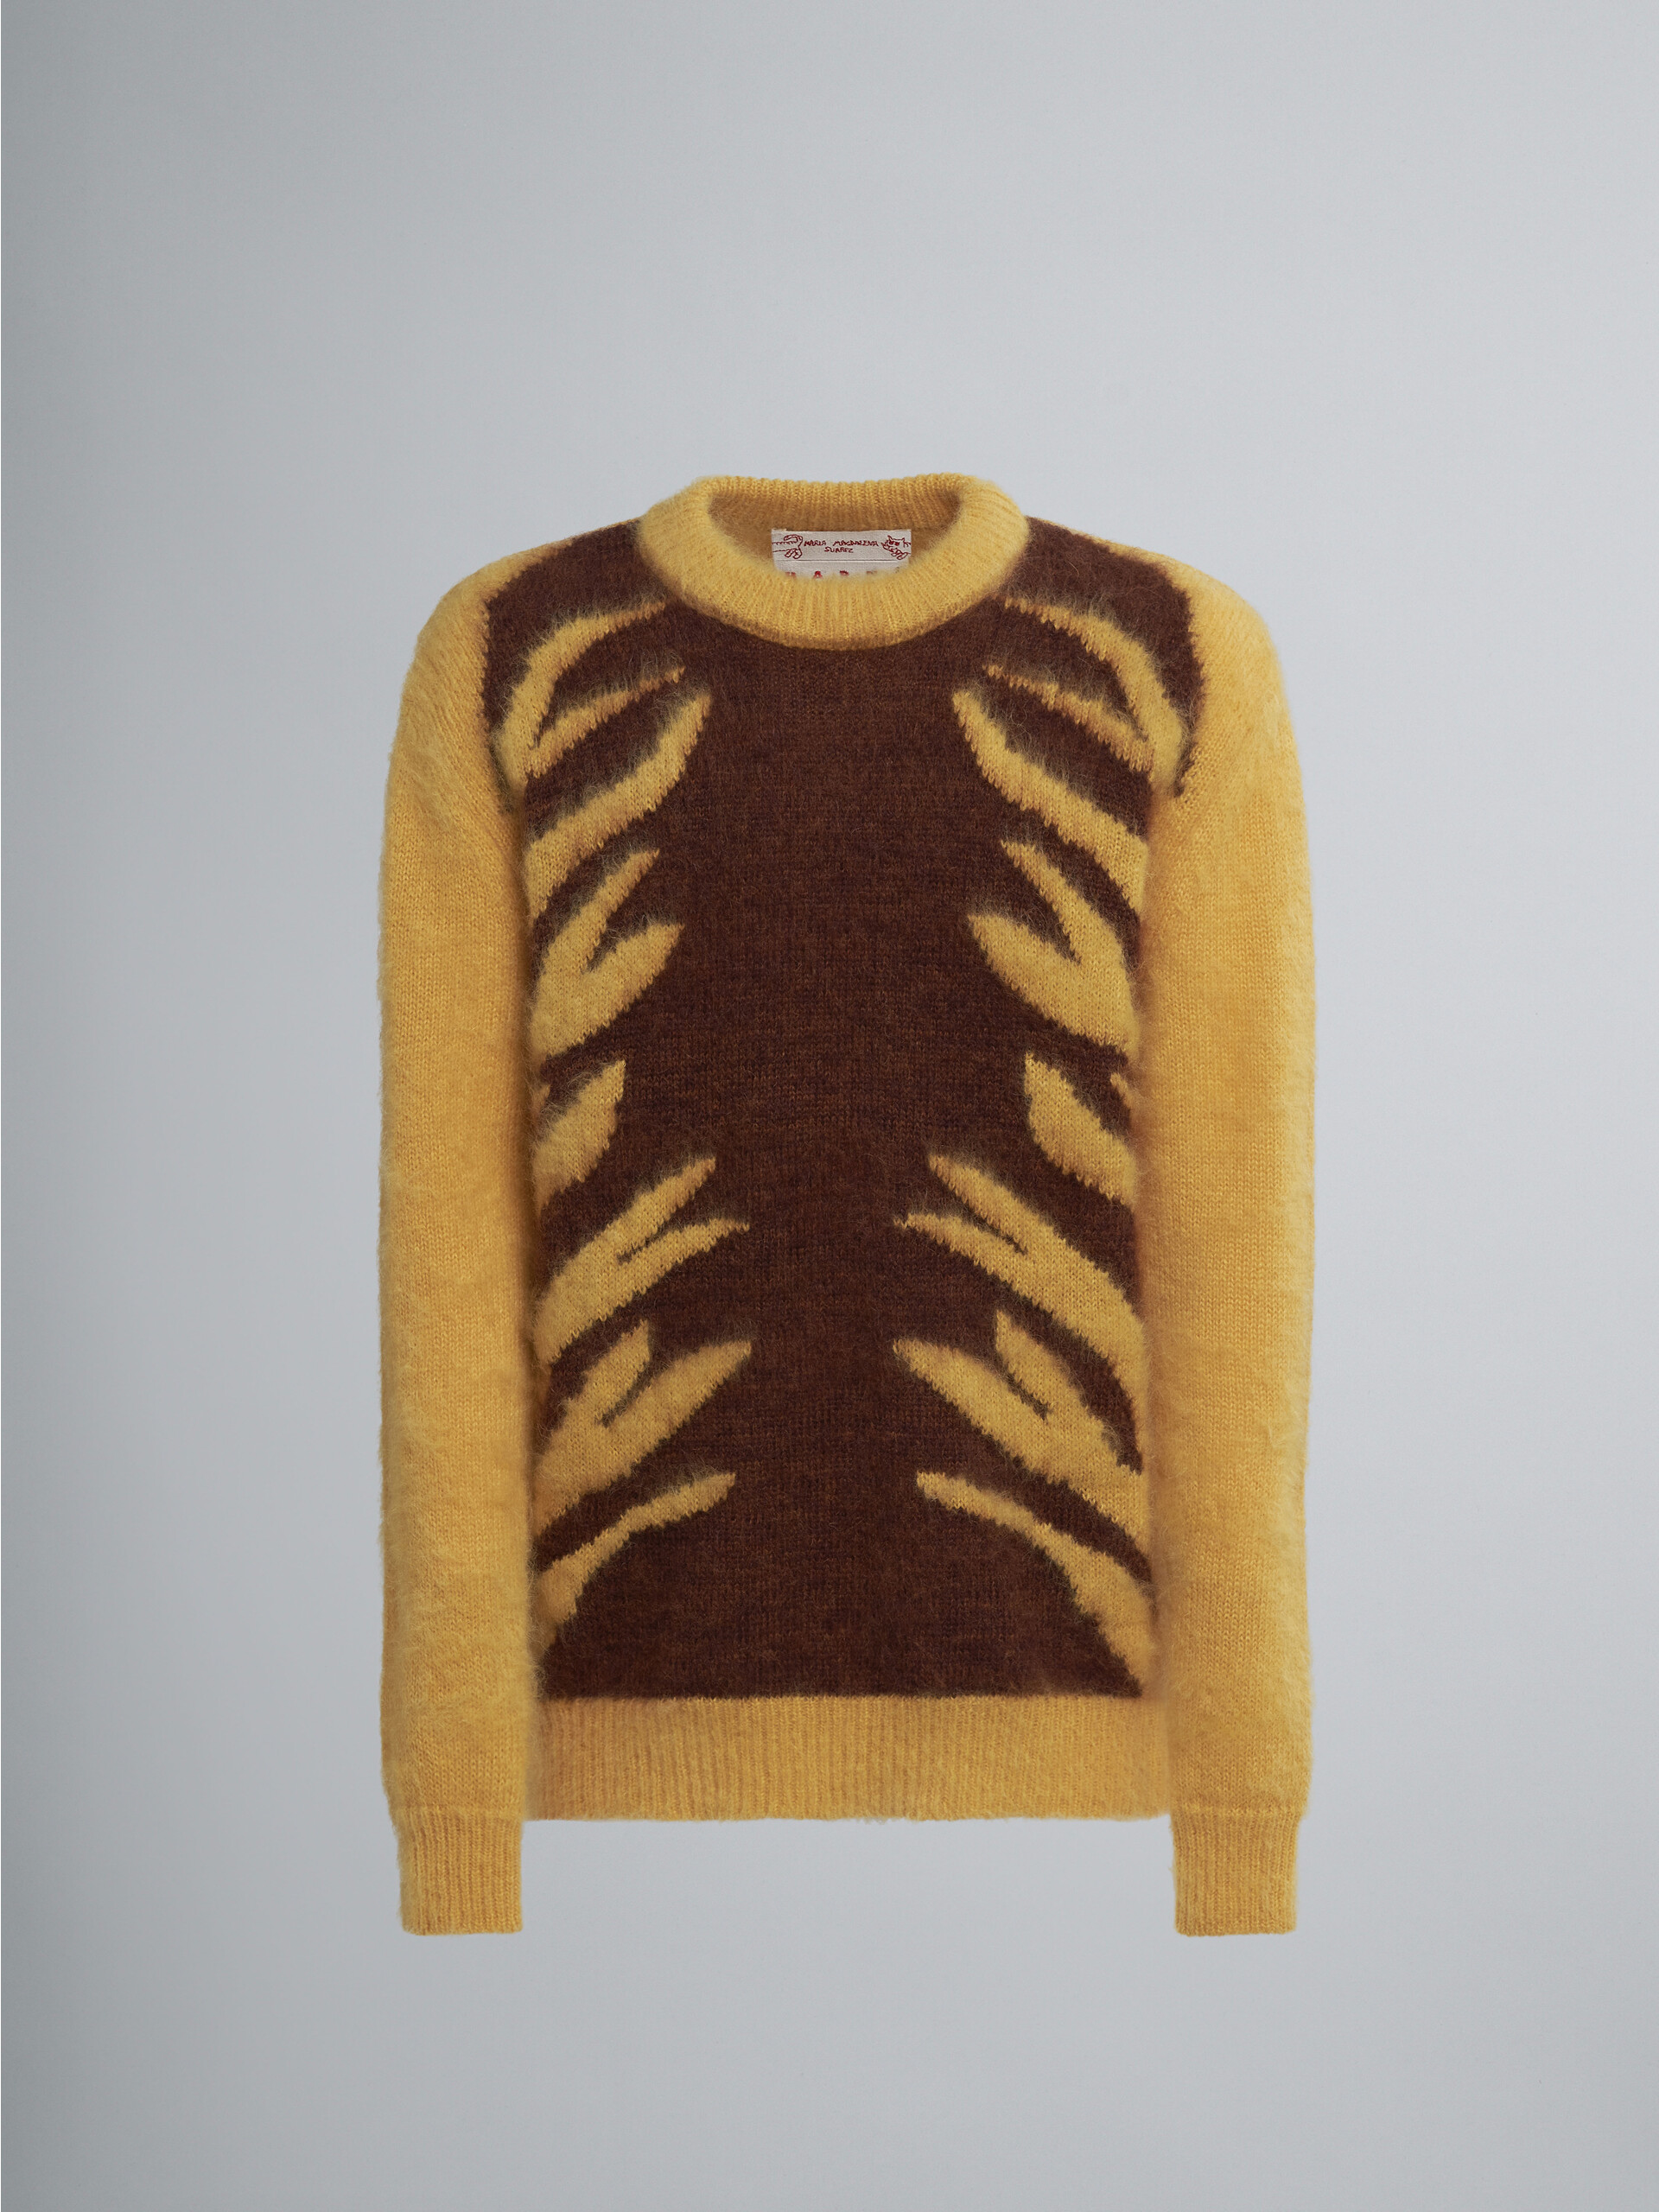 Naif Tiger inlay sweater - Pullovers - Image 1